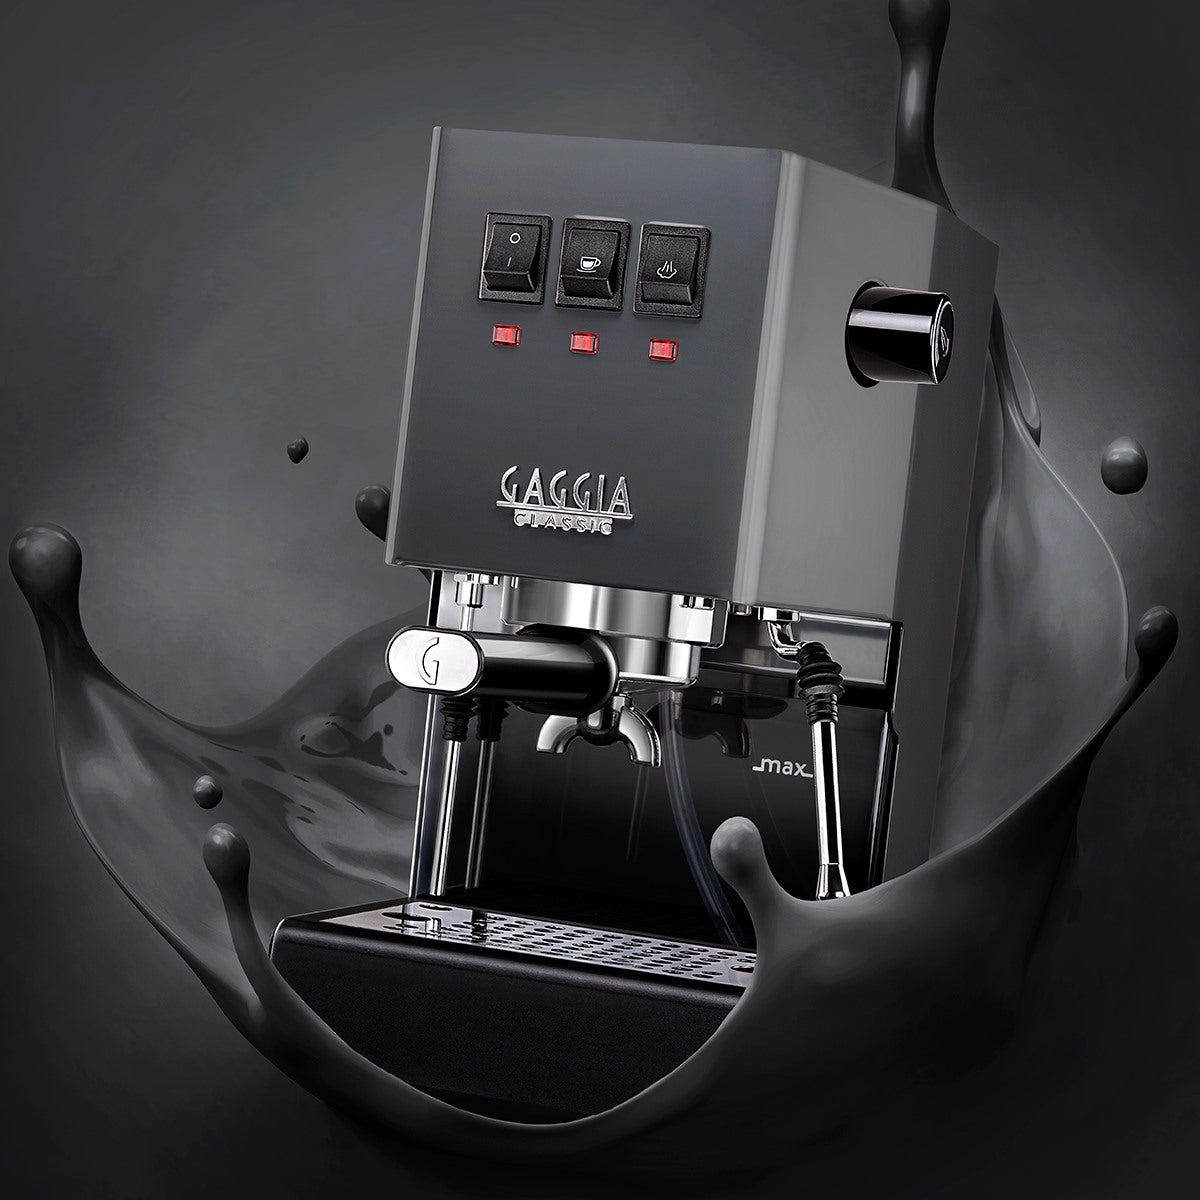 Gaggia Classic Pro Espresso Machine - Italian Espresso Machine - Manual Espresso machine - Residental Espresso Machine - Thunder Black Gaggia Classic Pro - Manual residential espresso machine